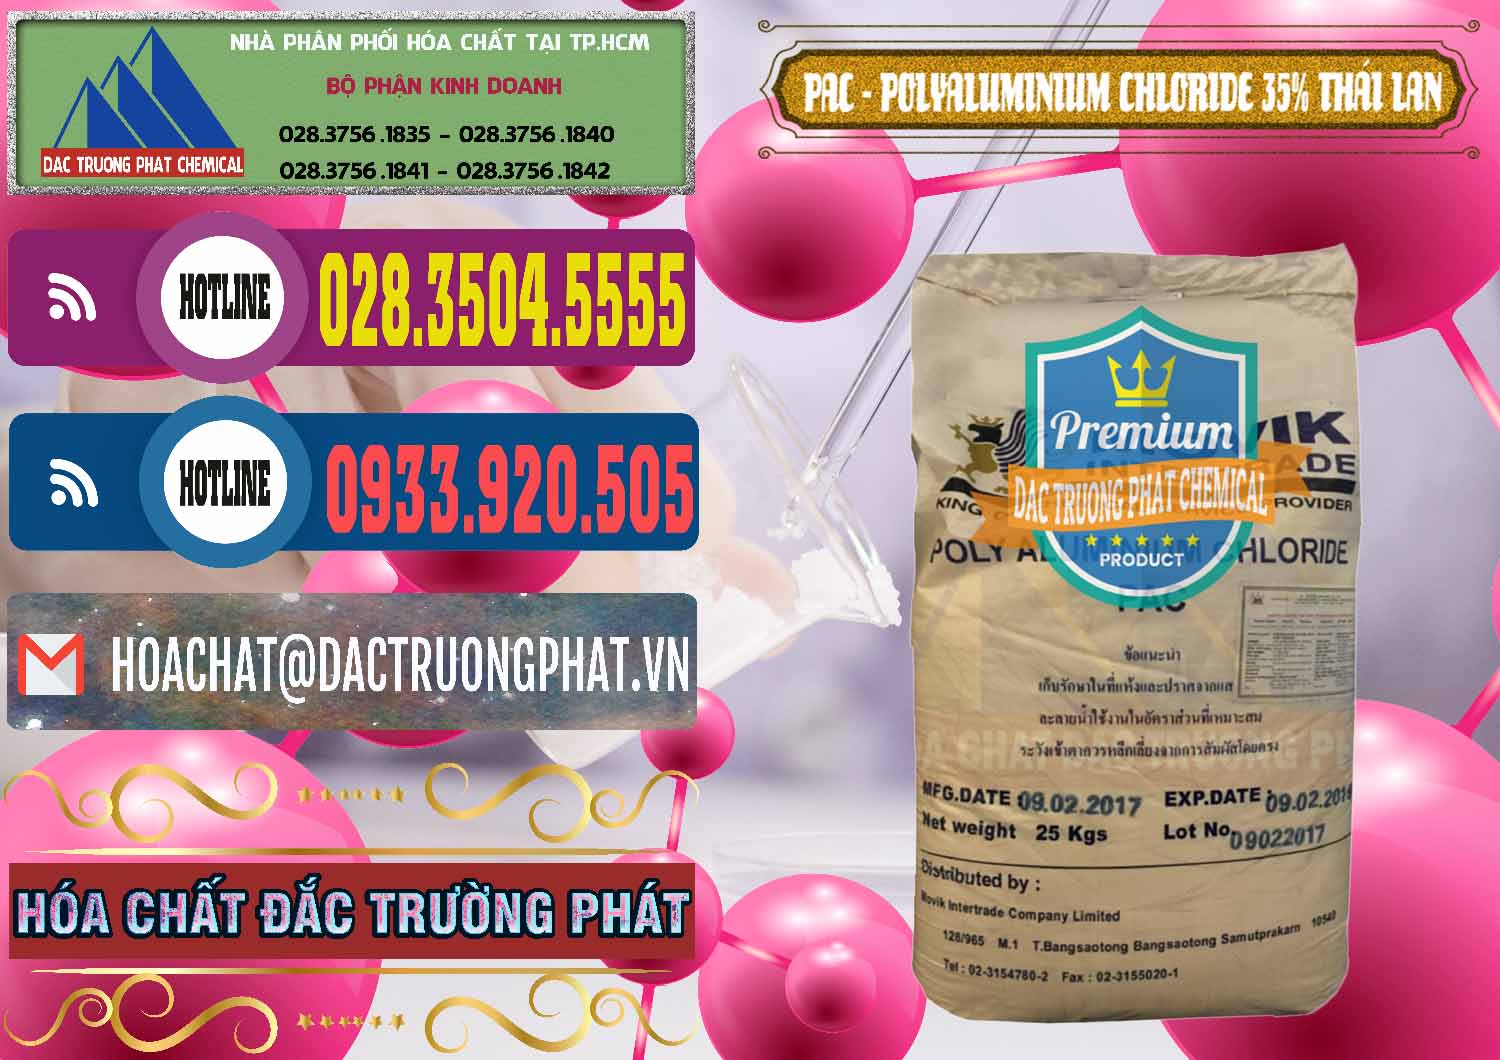 Nơi chuyên bán ( cung cấp ) PAC - Polyaluminium Chloride 35% Thái Lan Thailand - 0470 - Cty cung cấp _ kinh doanh hóa chất tại TP.HCM - muabanhoachat.com.vn